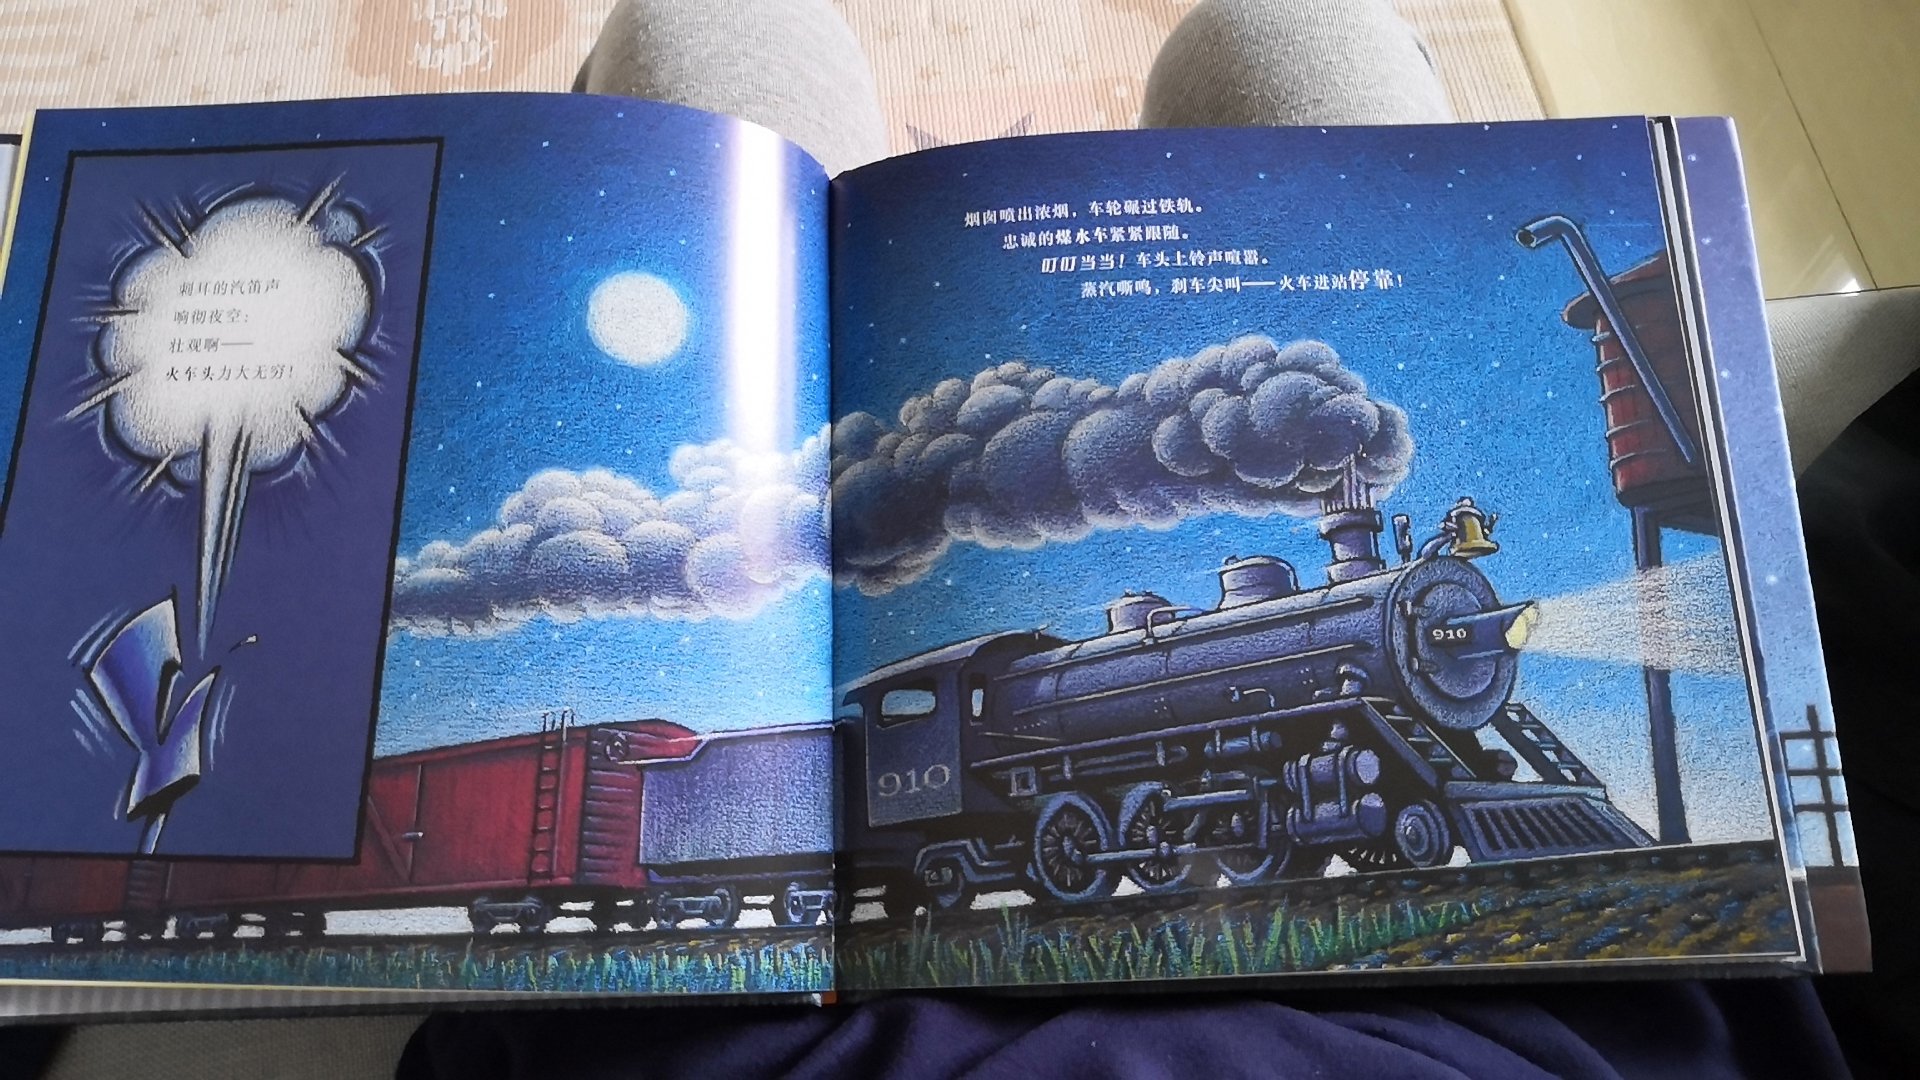 两本书的纸质竟然不一样，梦幻火车那本是光滑的铜版纸的那种，工地上的车就是普通纸。我们家这个车迷应该很满意。